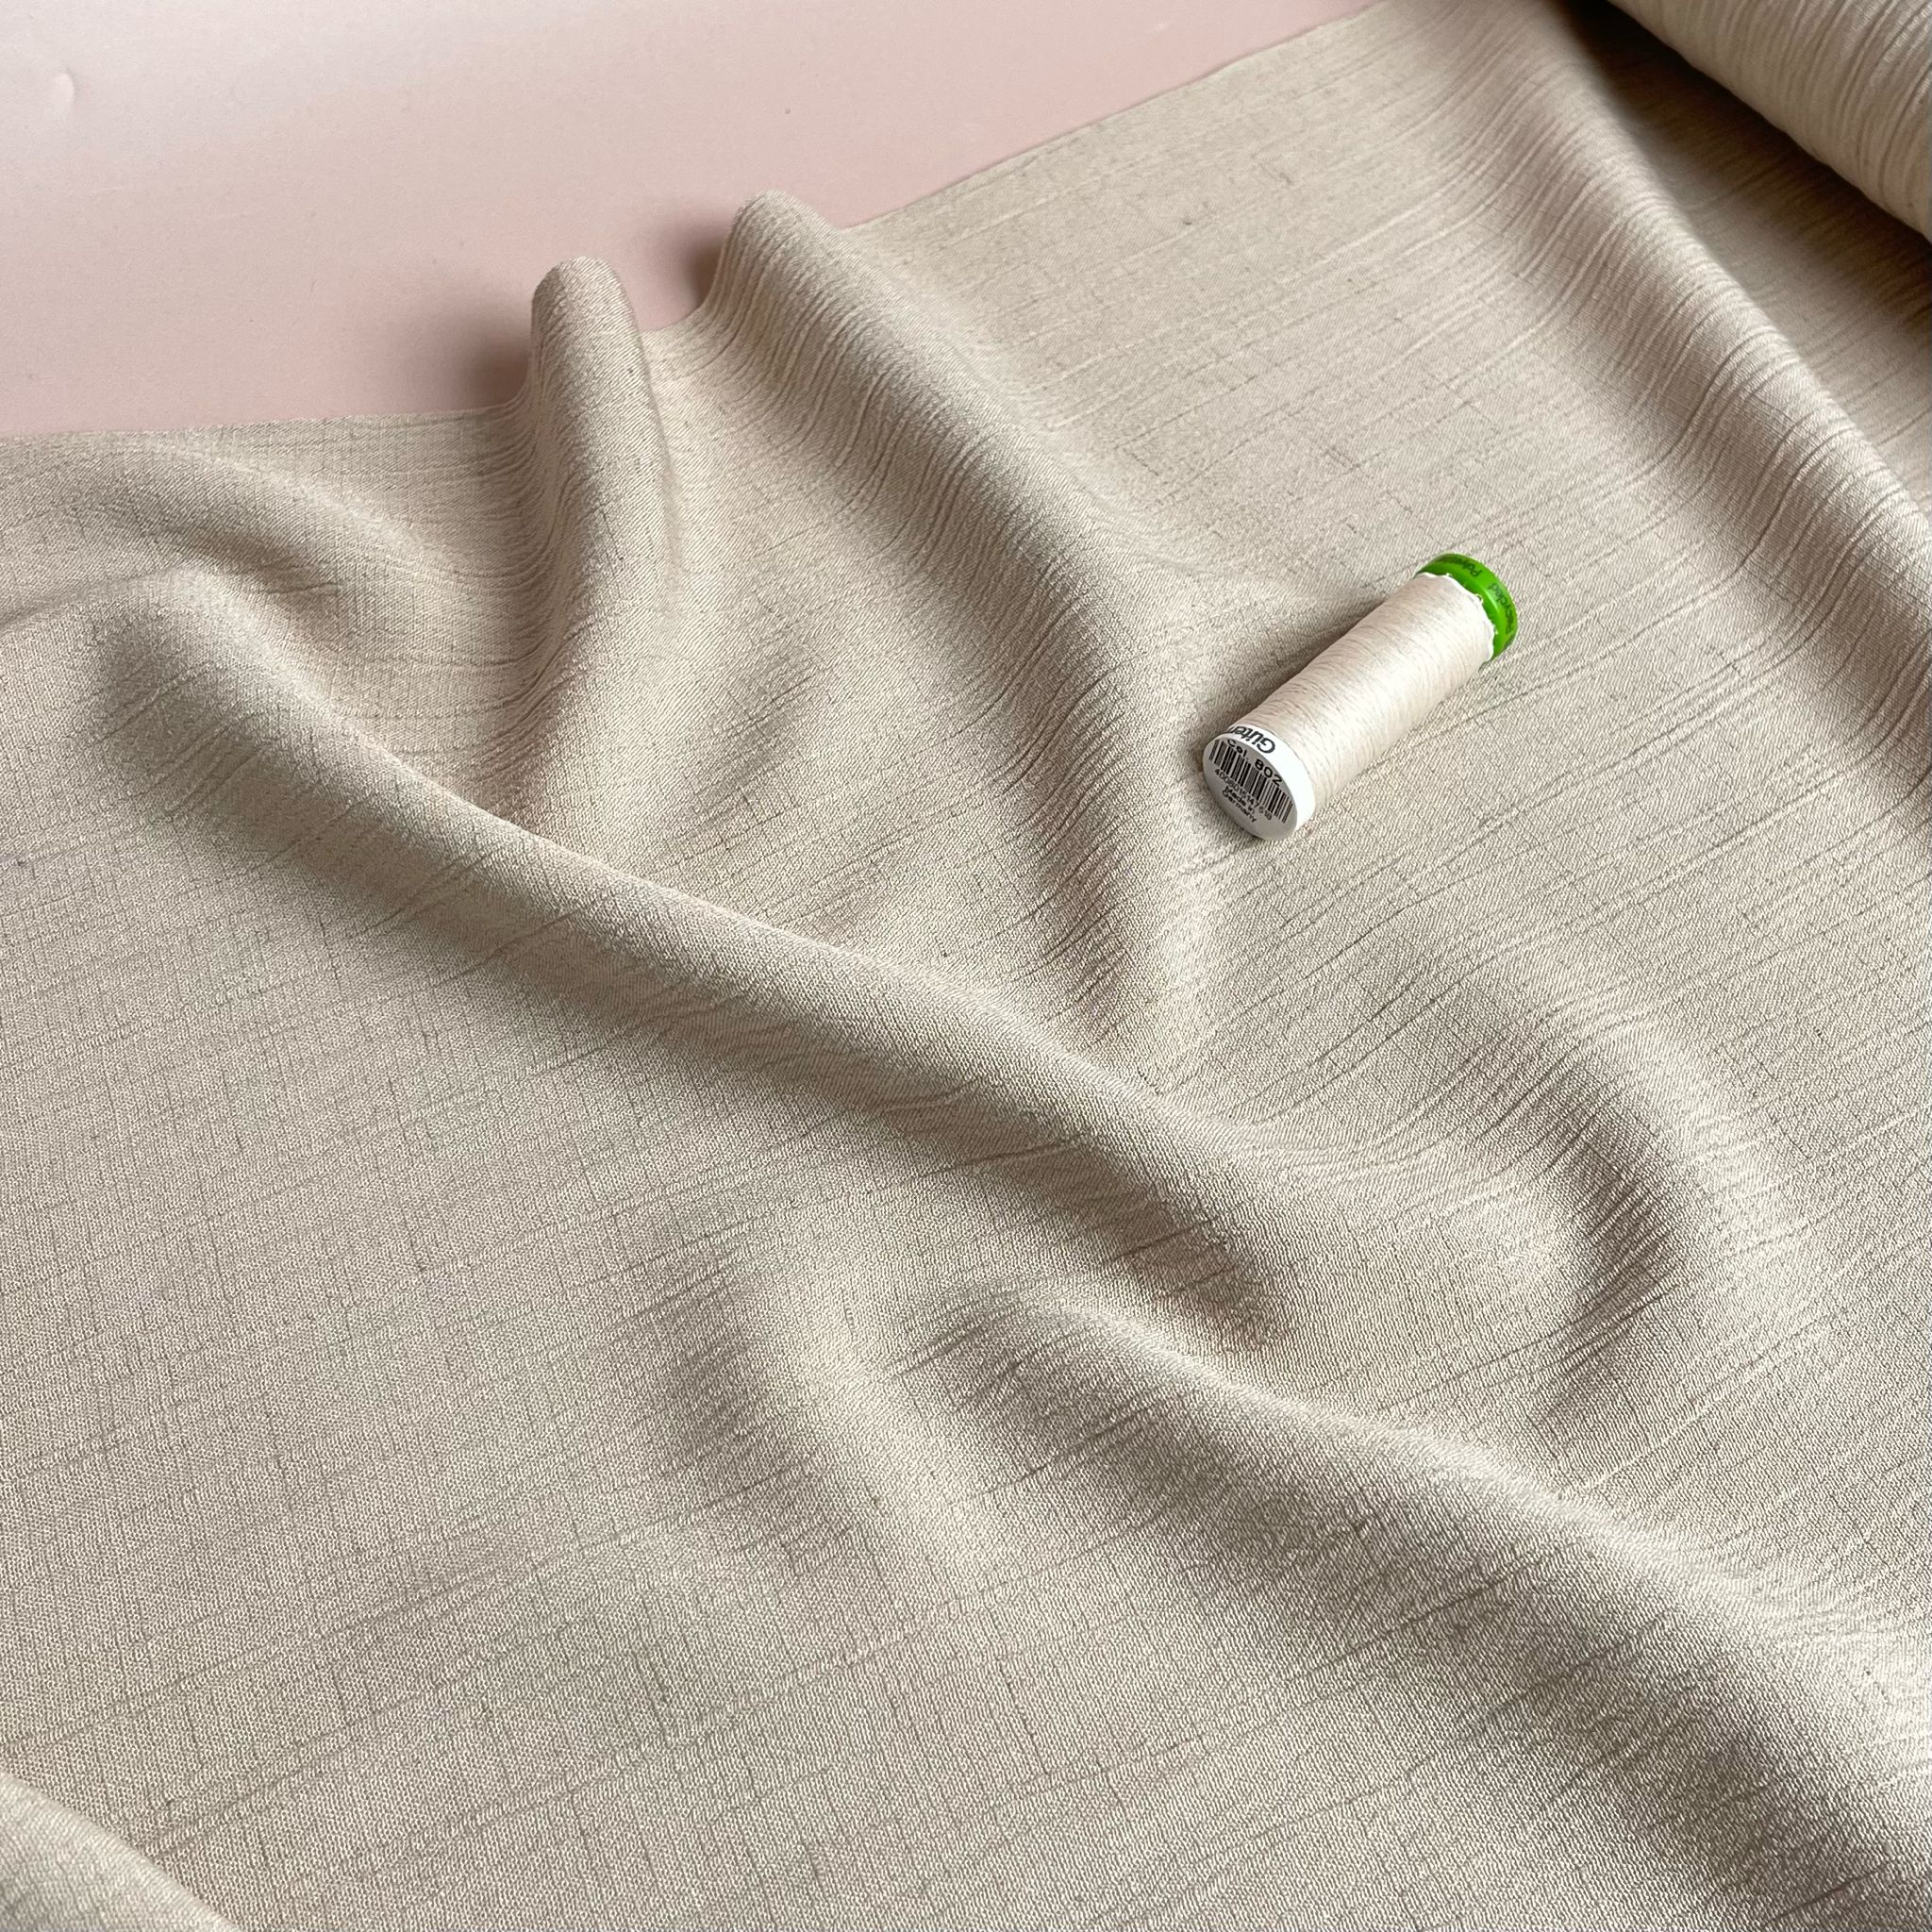 Crinkle Viscose Linen Blend Fabric in Ecru Beige